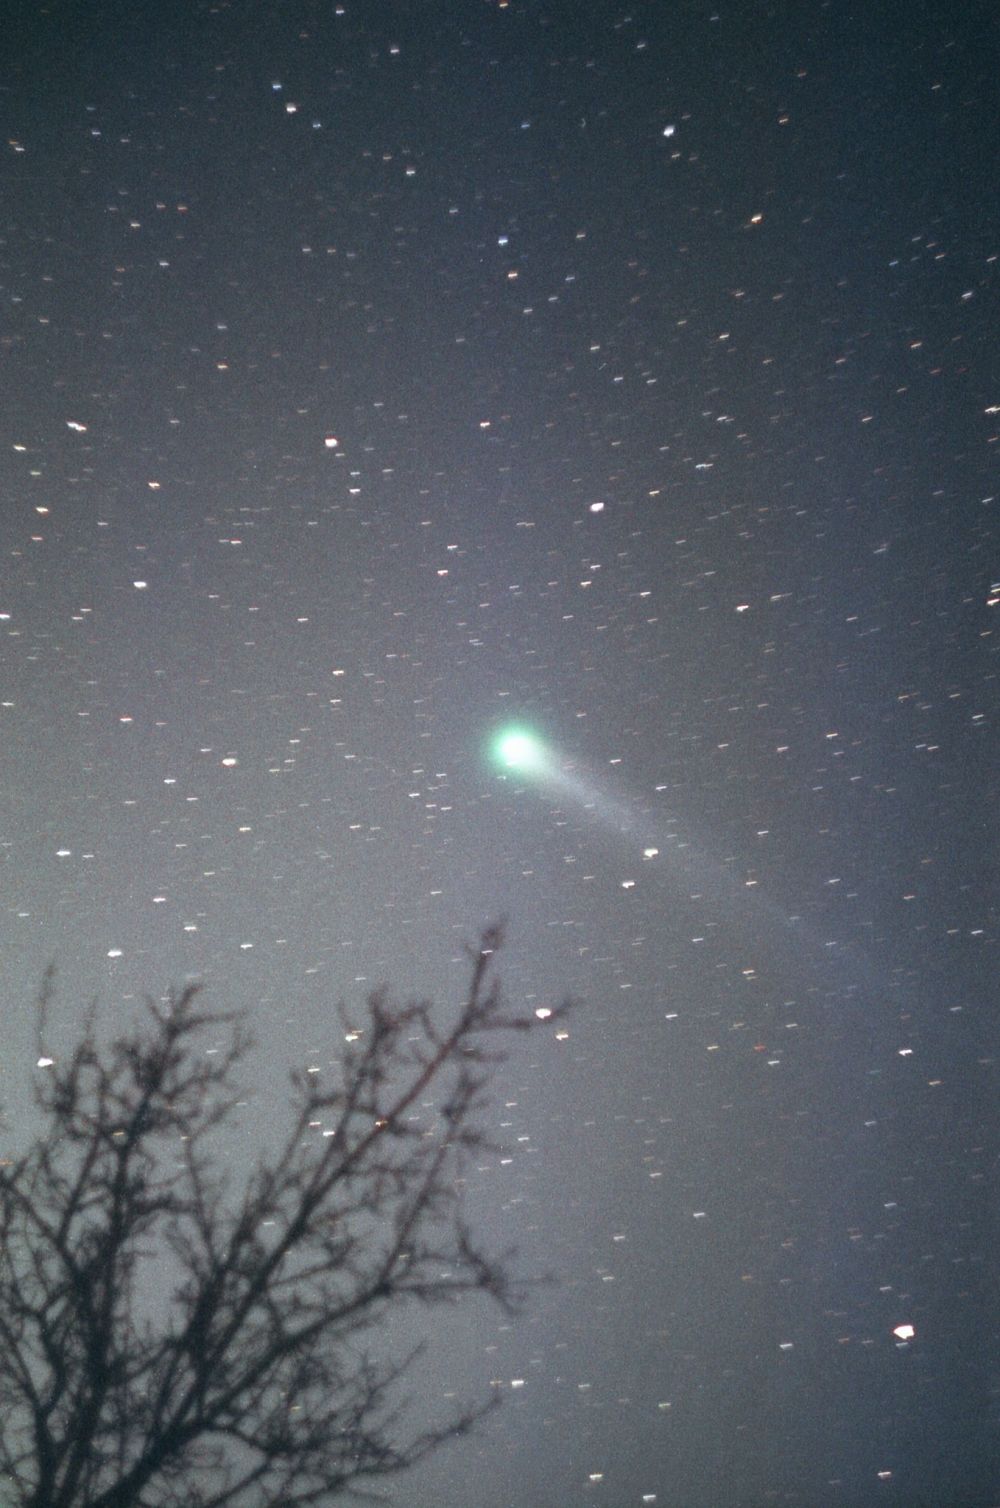 Комета C/1996 B1 Hyakutake 23.03.1996